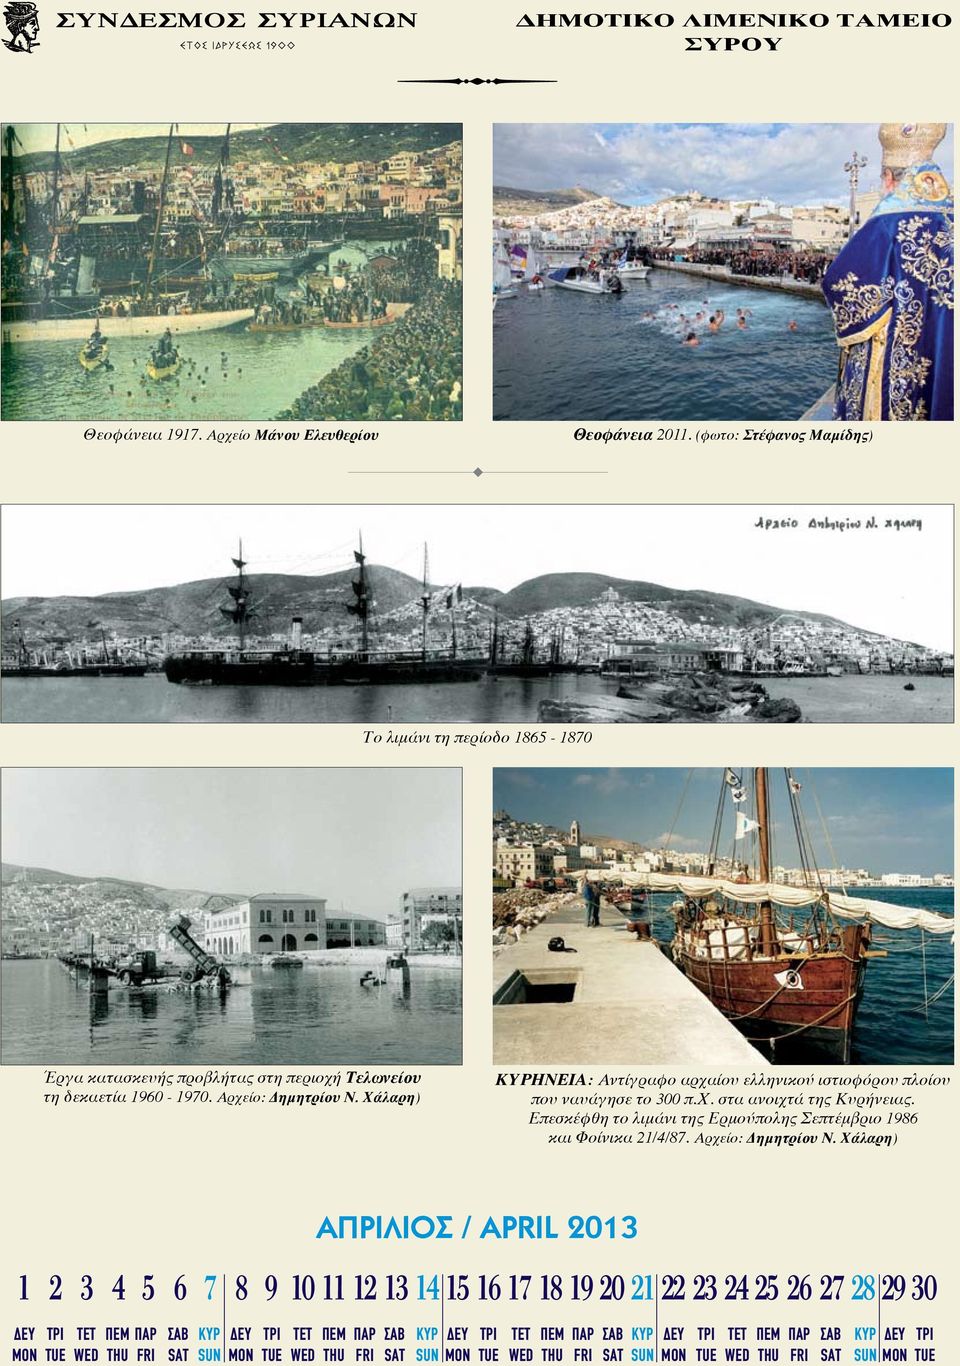 Αρχείο: Δημητρίου Ν. Χάλαρη) ΗΝΕΙΑ: Αντίγραφο αρχαίου ελληνικού ιστιοφόρου πλοίου που ναυάγησε το 300 π.χ. στα ανοιχτά της Κυρήνειας.